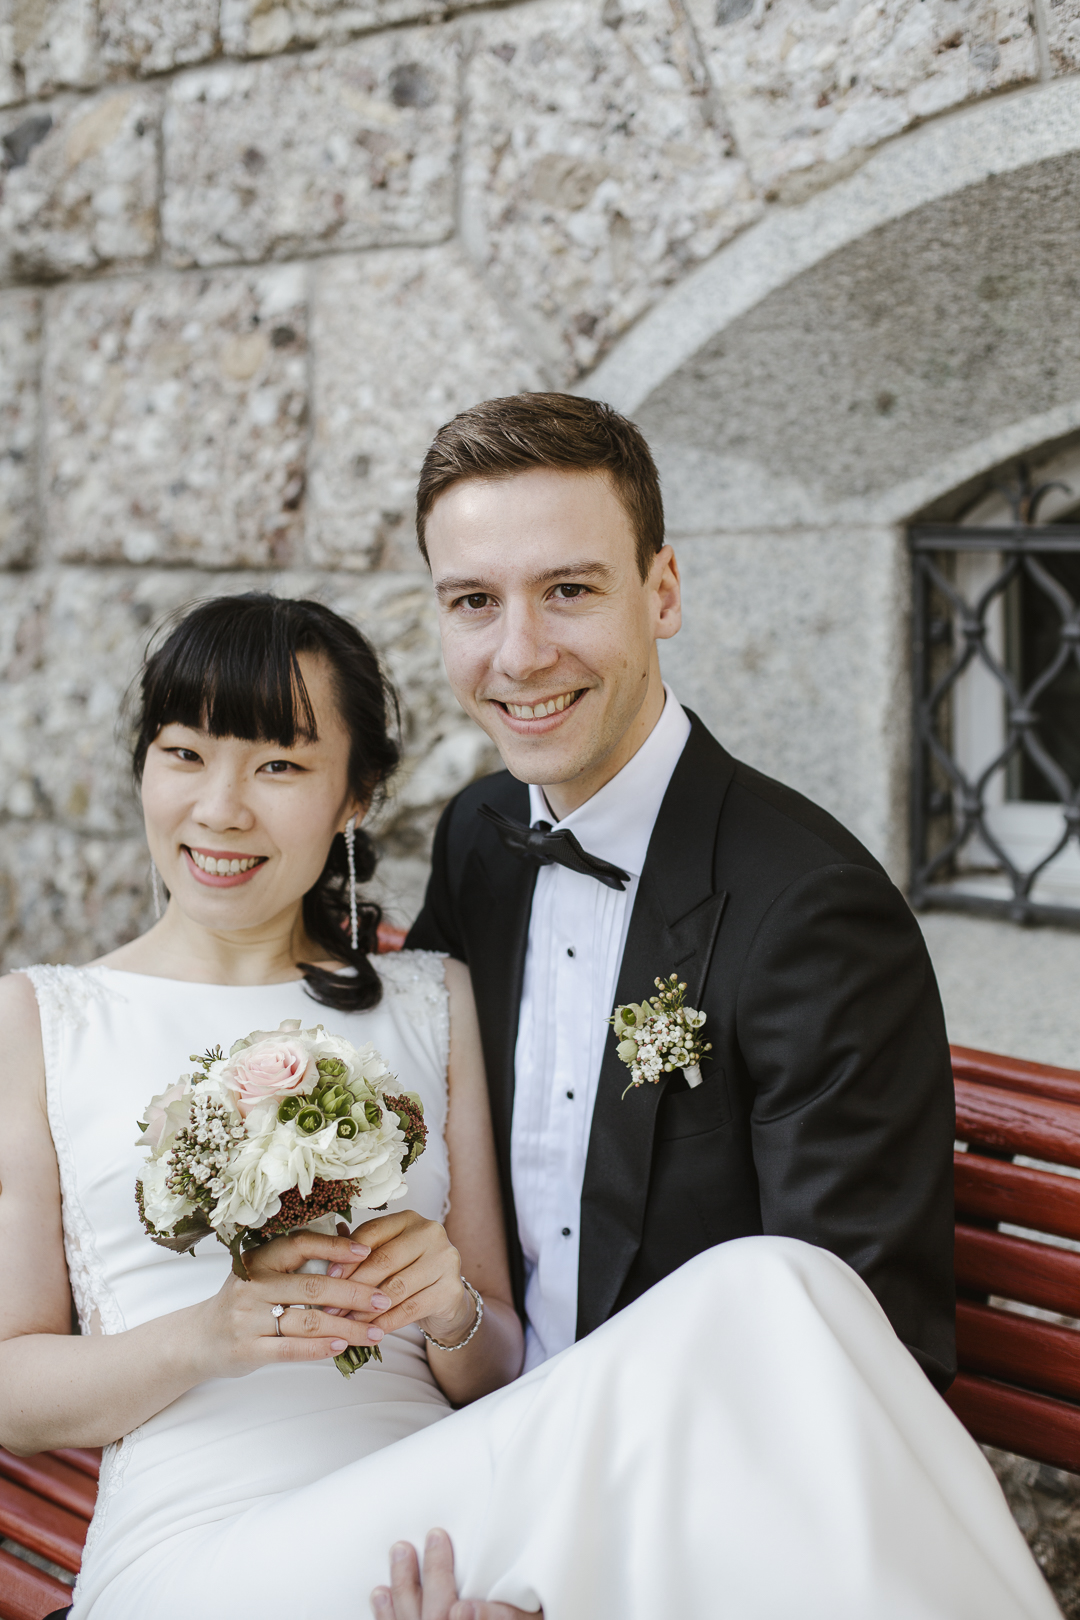 Gleich wird geheiratet - vor der Trauung dient der Rosenmattpark als tolle Fotokulisse